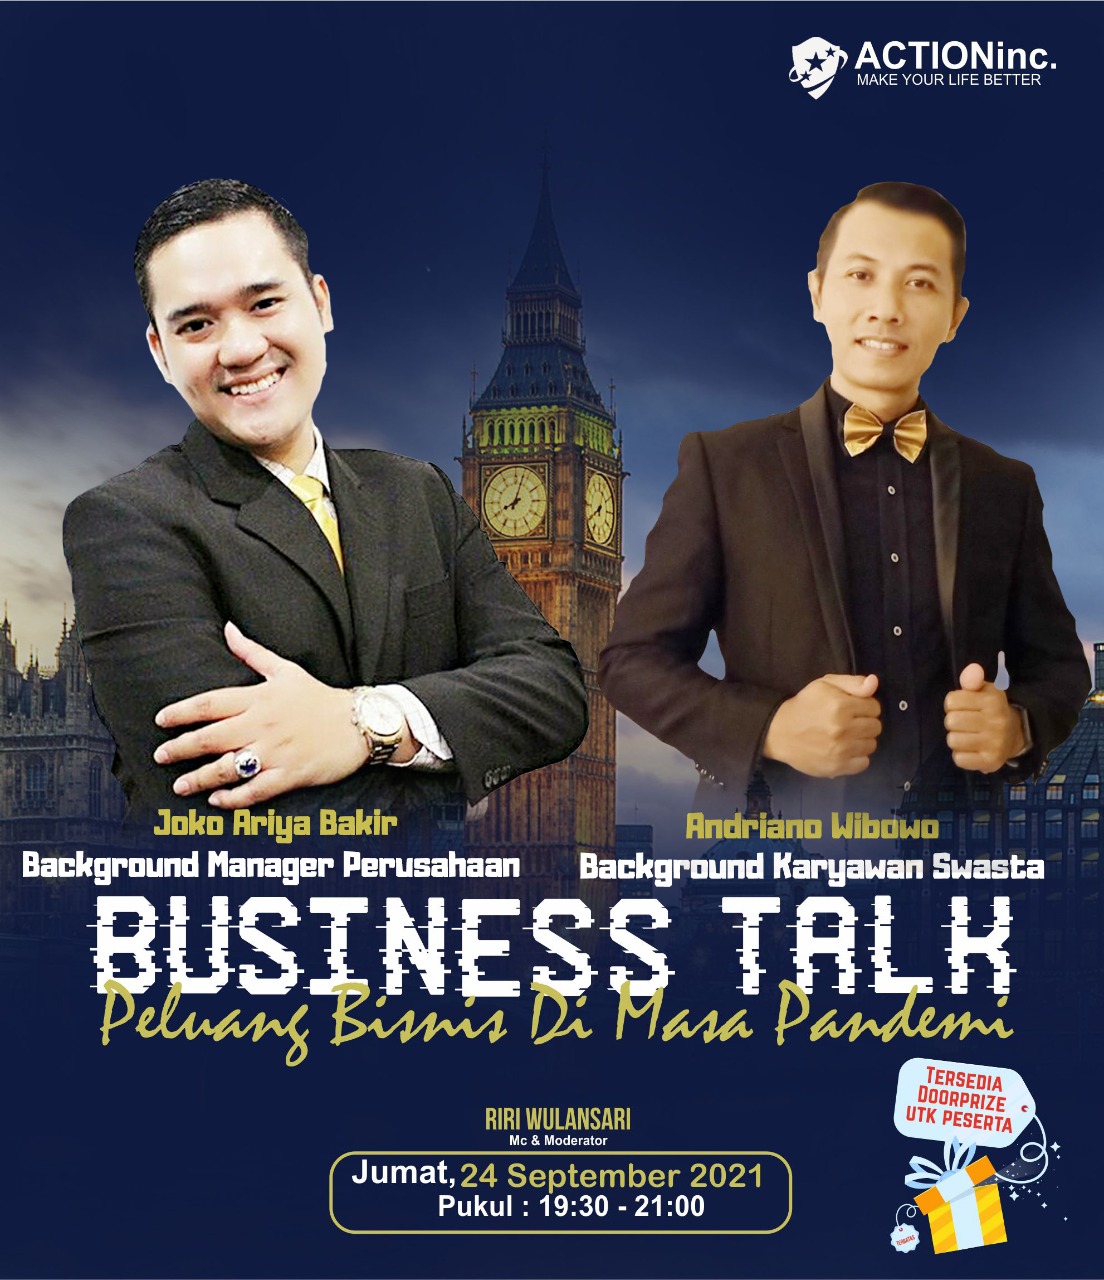 BUSINESS TALK